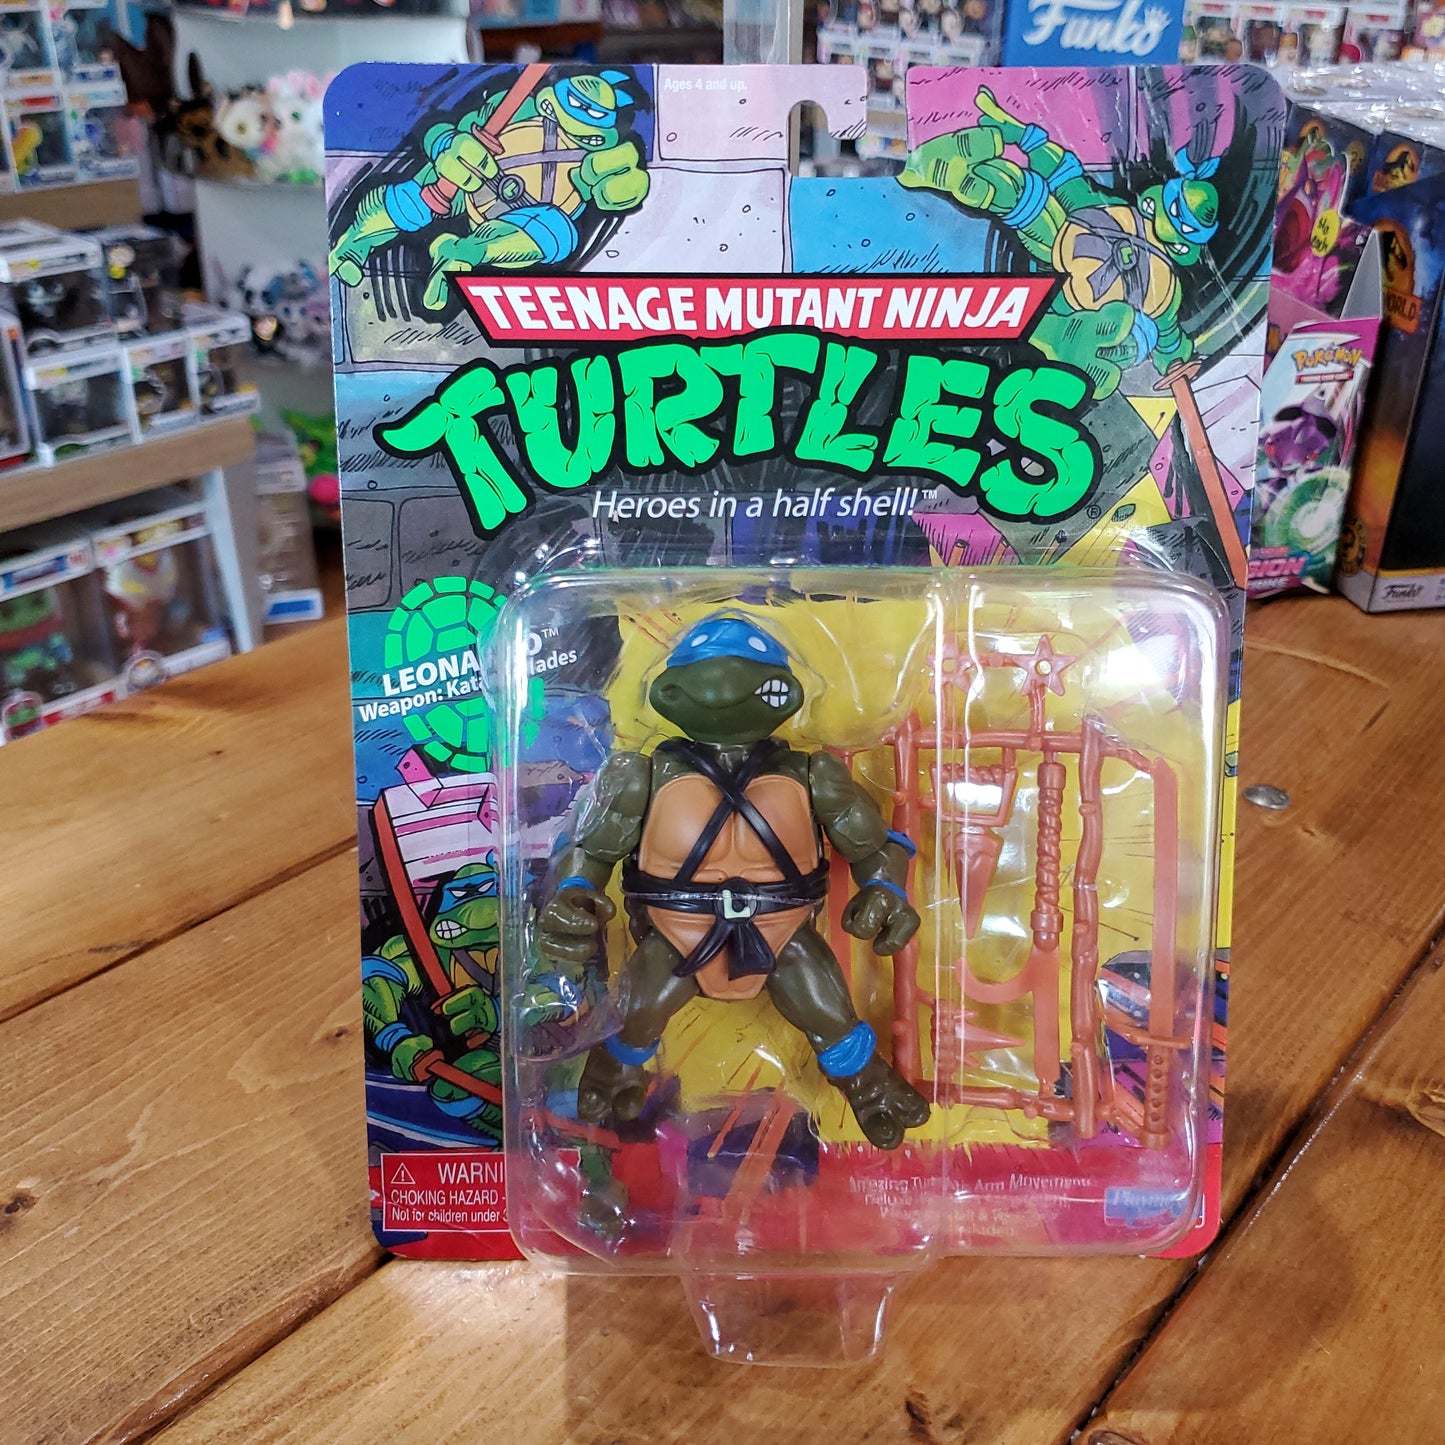 Teenage Mutant Ninja Turtles Action Figures by Playmates (2021)